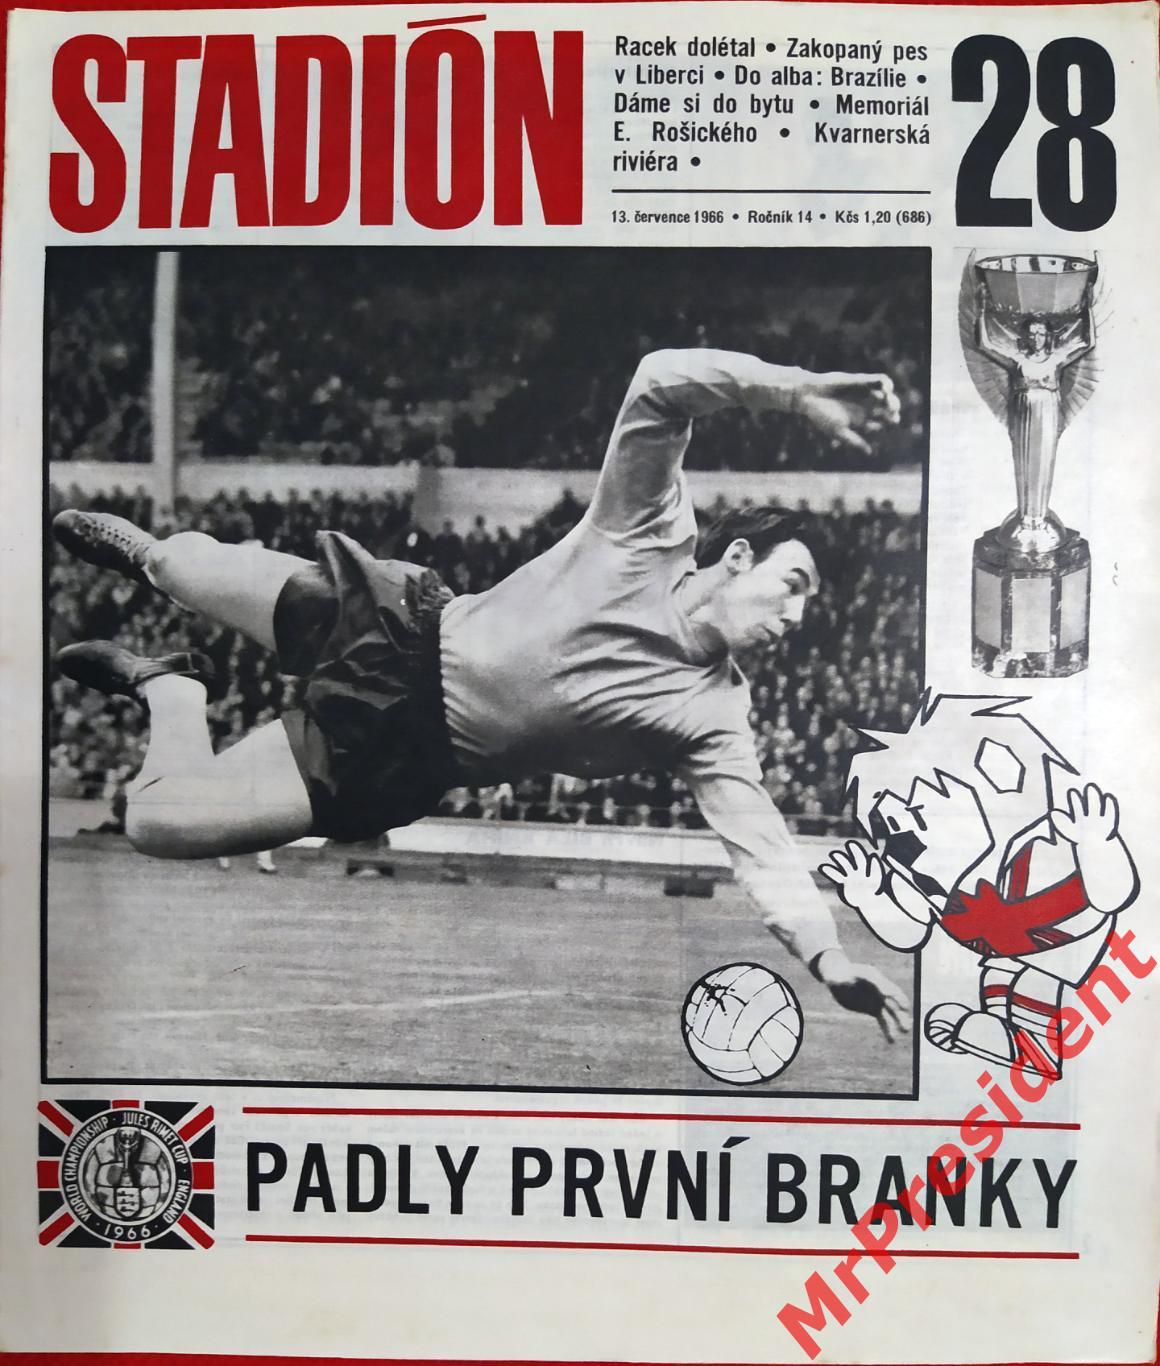 Журнал Stadion (Чехословакия). №28, 1966 год.